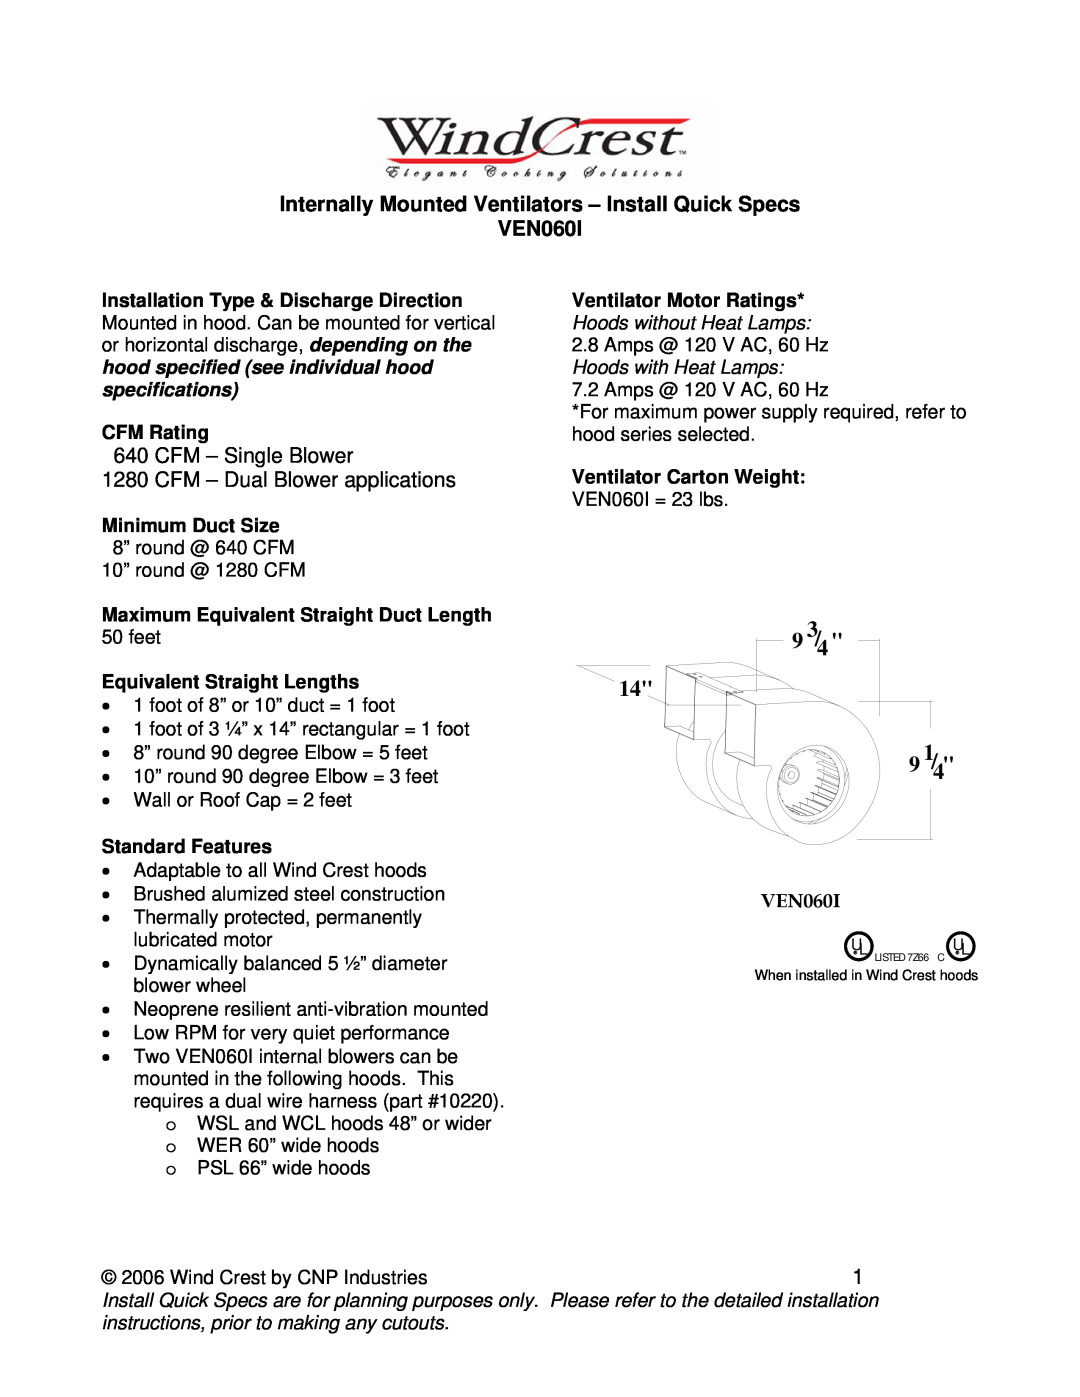 Wind Crest installation instructions Internally Mounted Ventilators - Install Quick Specs VEN060I, 9 3/4, 9 1/4 